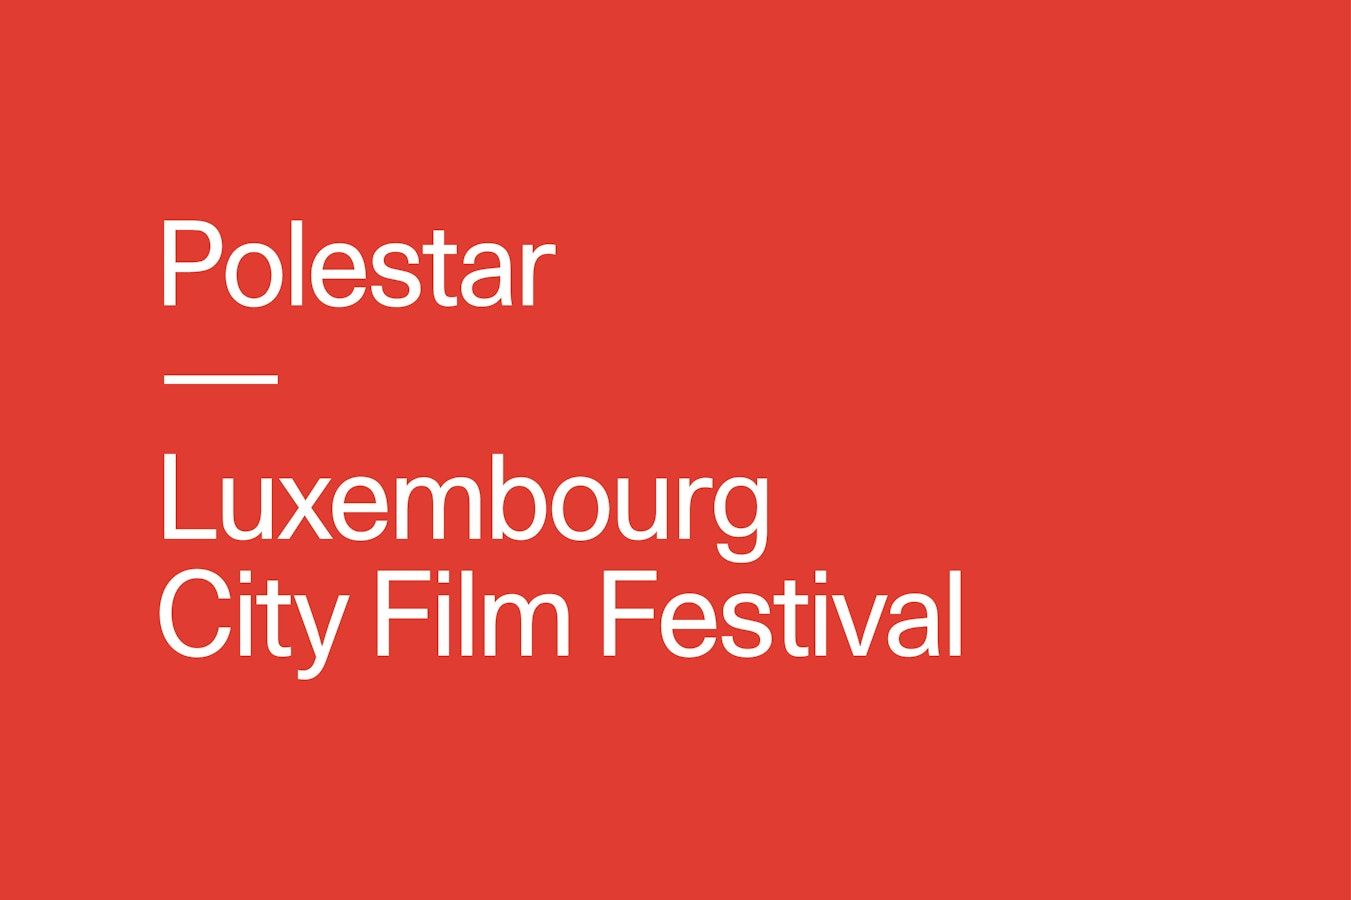 polestar Luxembourg city film festival en caractères blancs sur fond rouge